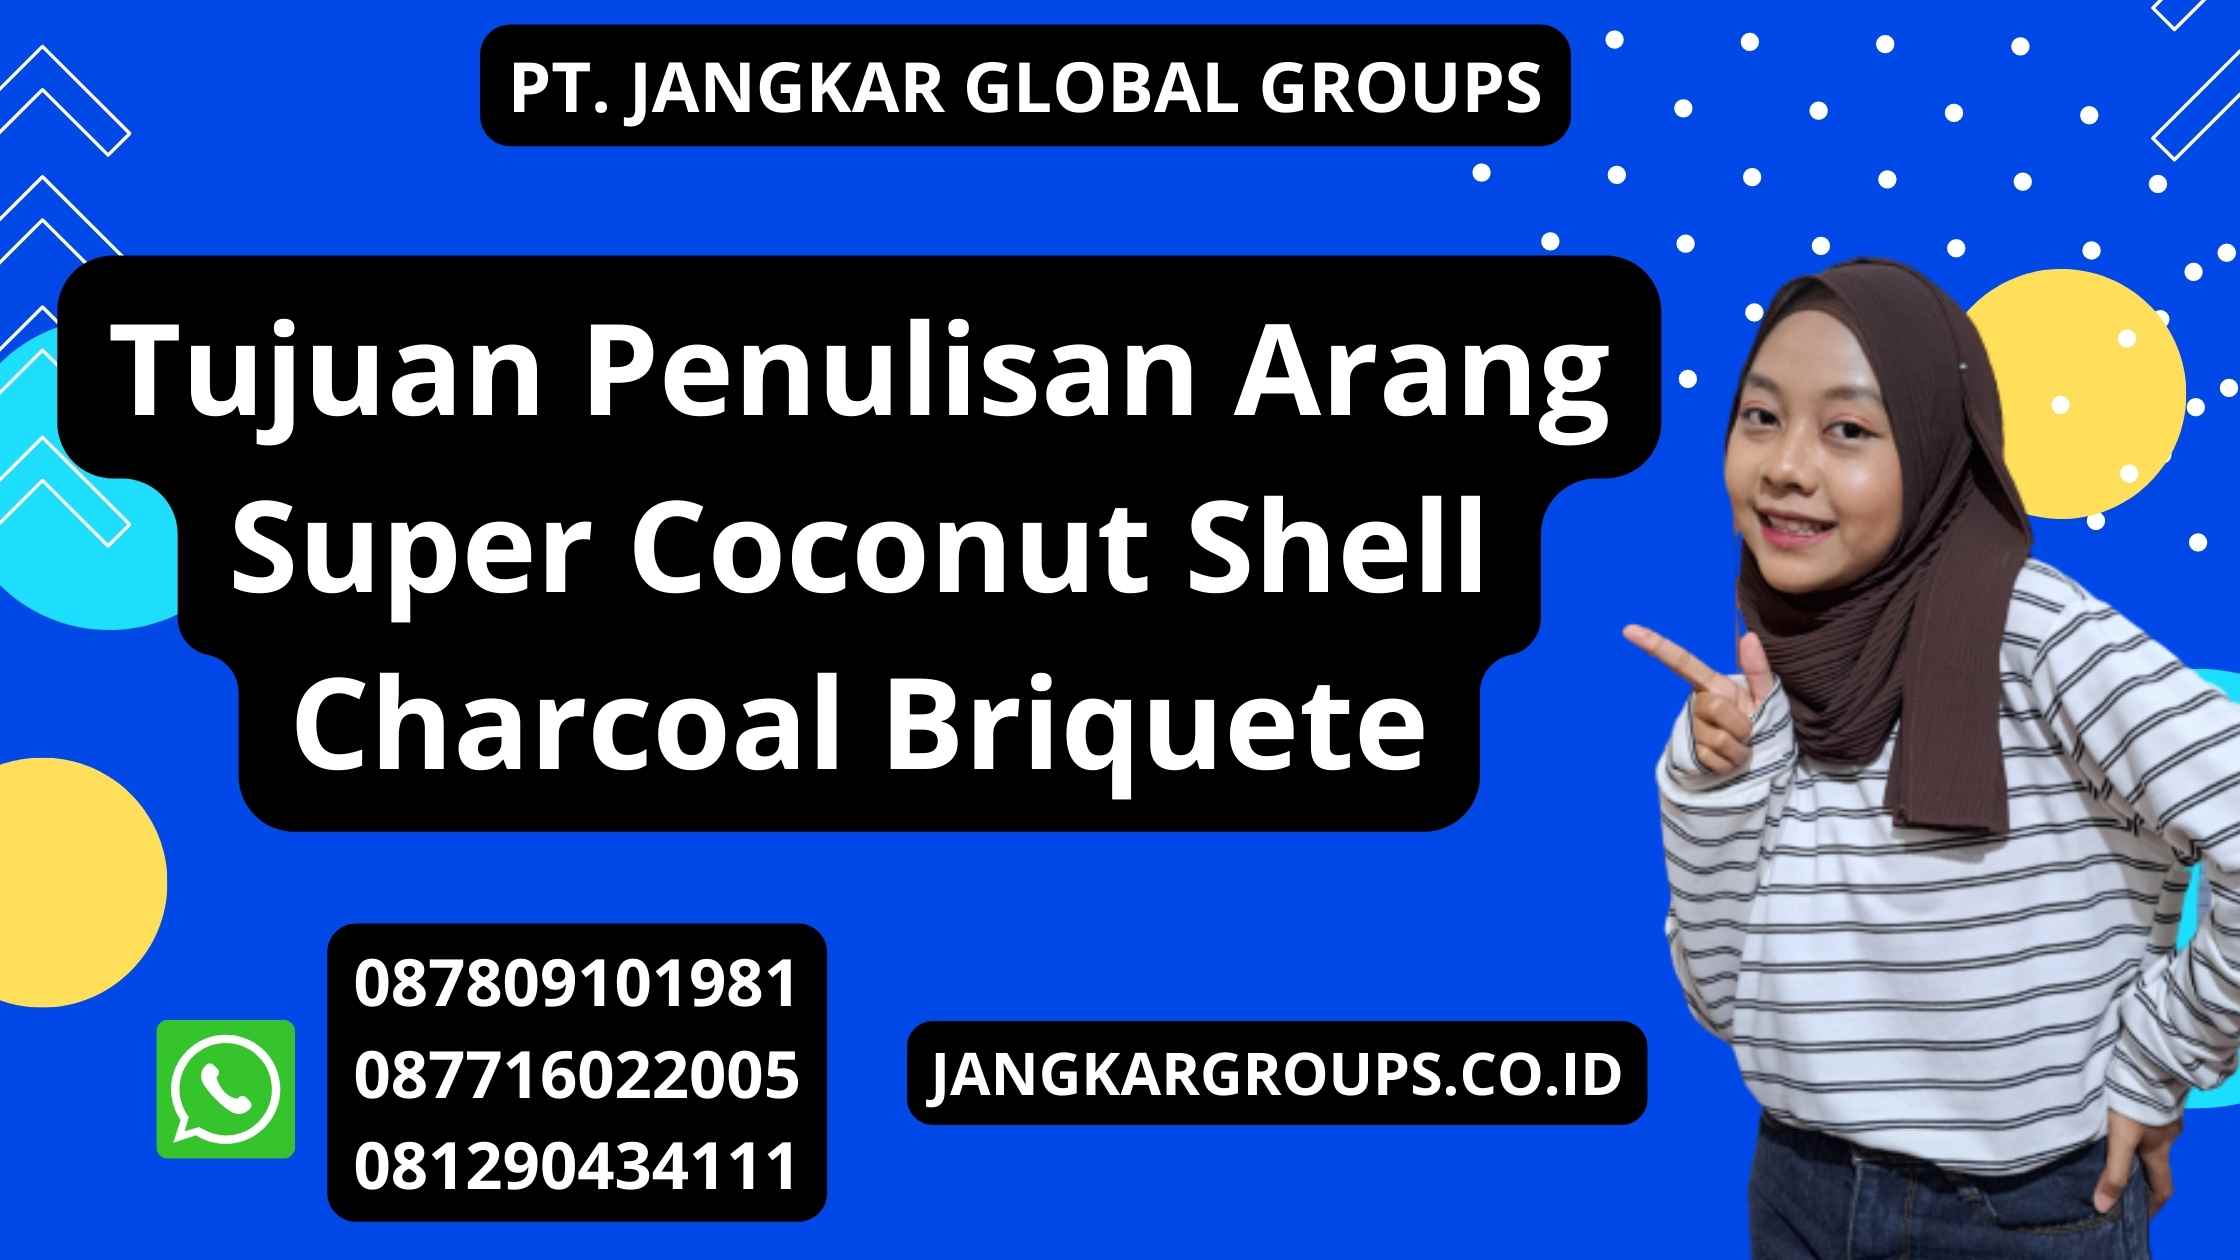 Tujuan Penulisan Arang Super Coconut Shell Charcoal Briquete